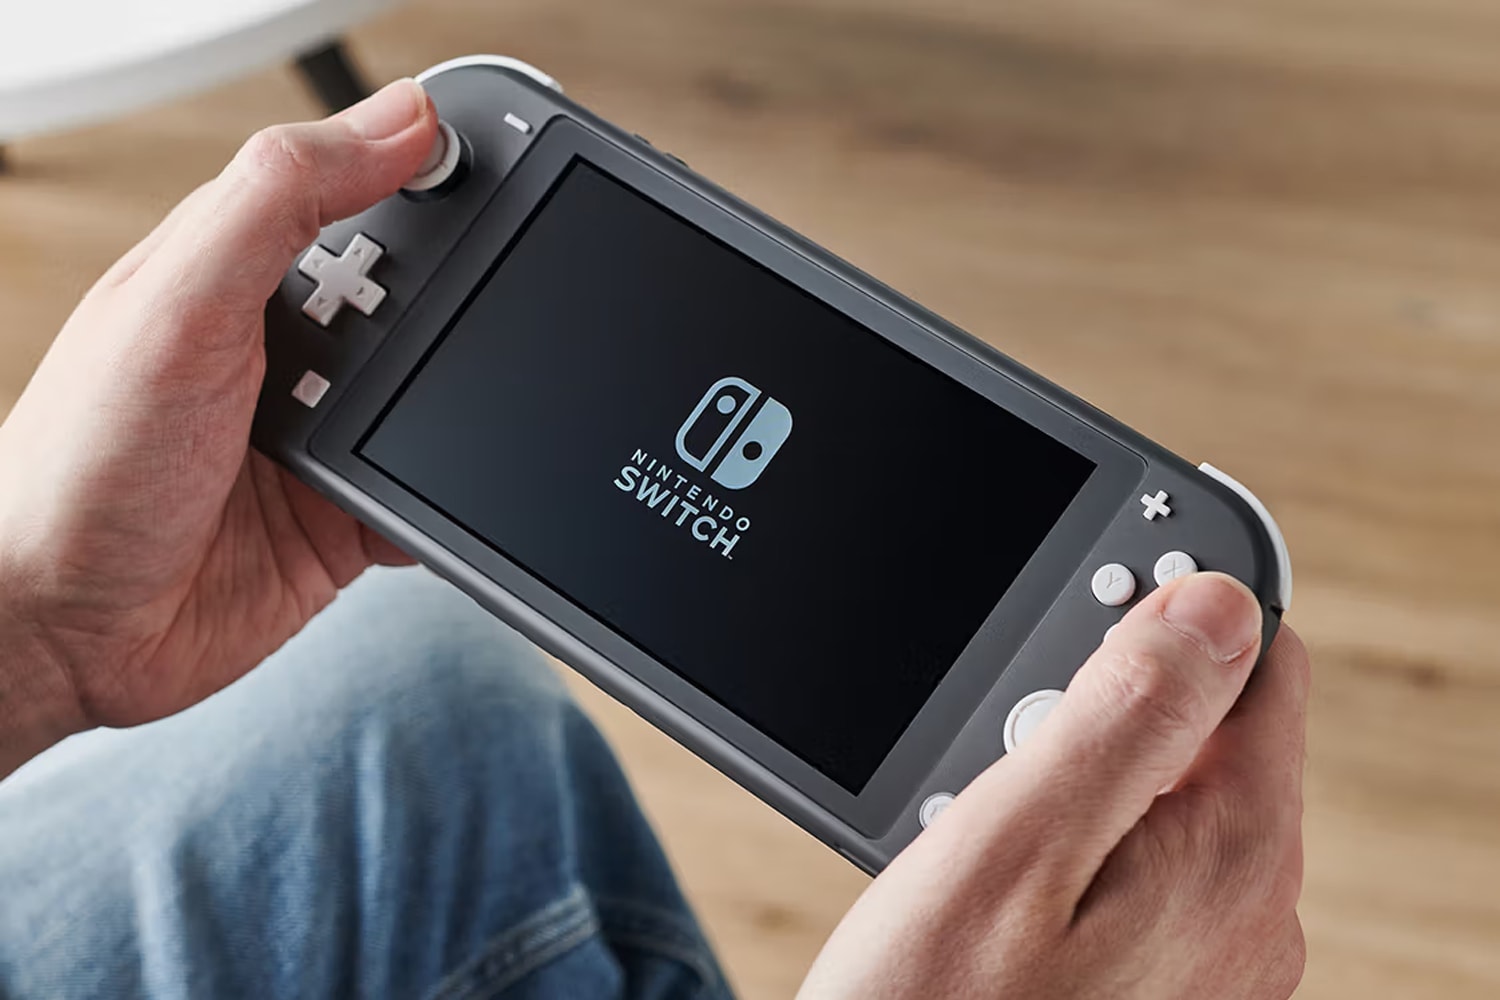 消息稱 Nintendo Switch 新一代主機將配備 8 英吋 LCD 大螢幕